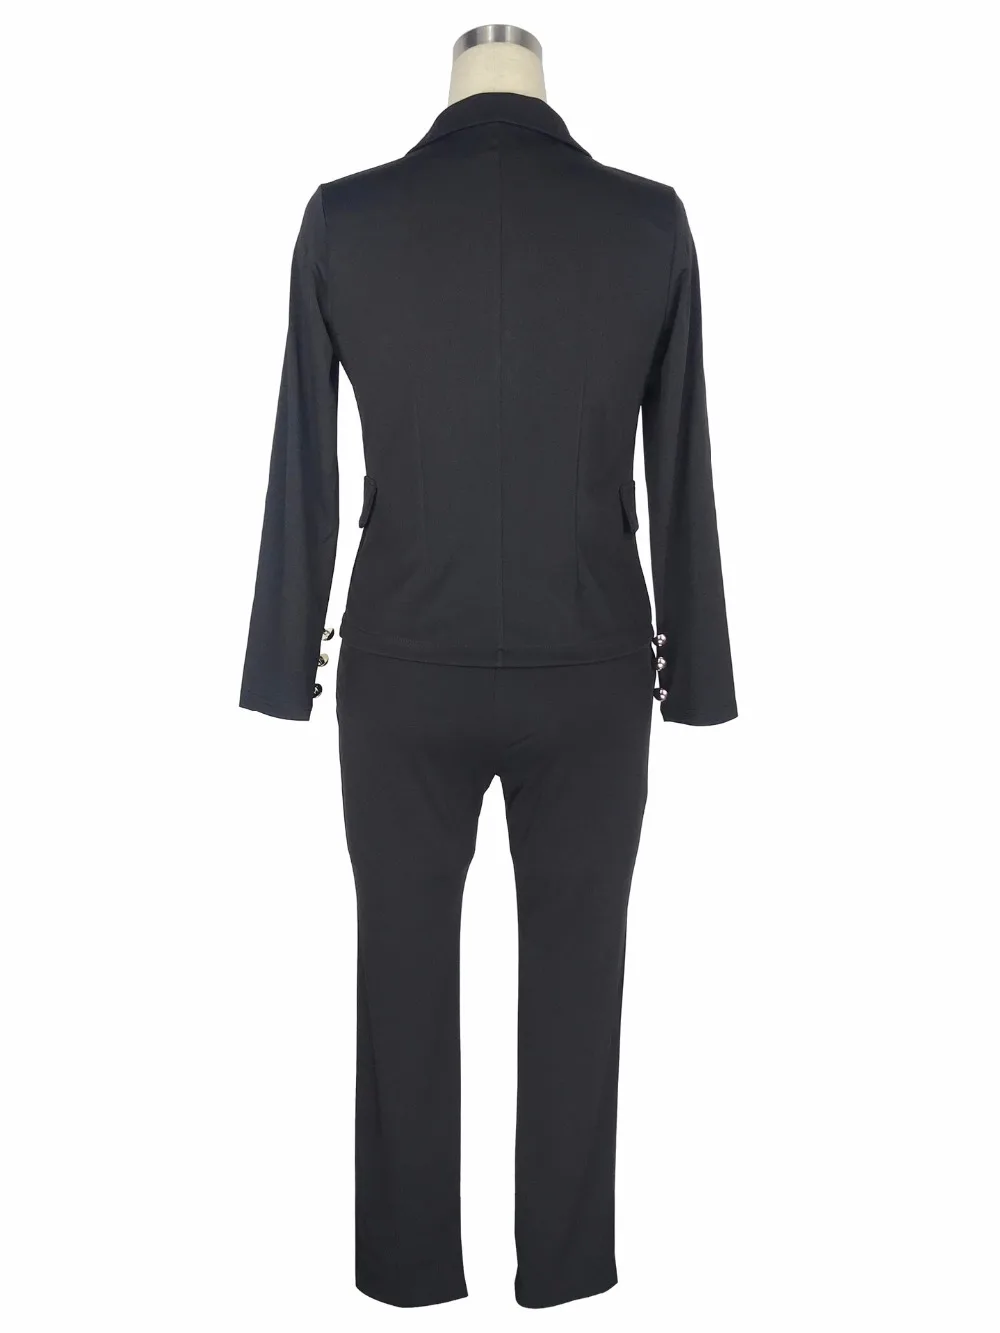 2019 Work Pant Suit OL 2 Piece Set for Women Business Interview Suit Set Uniform Blazer Pencil Pant Office Lady Suit Black White